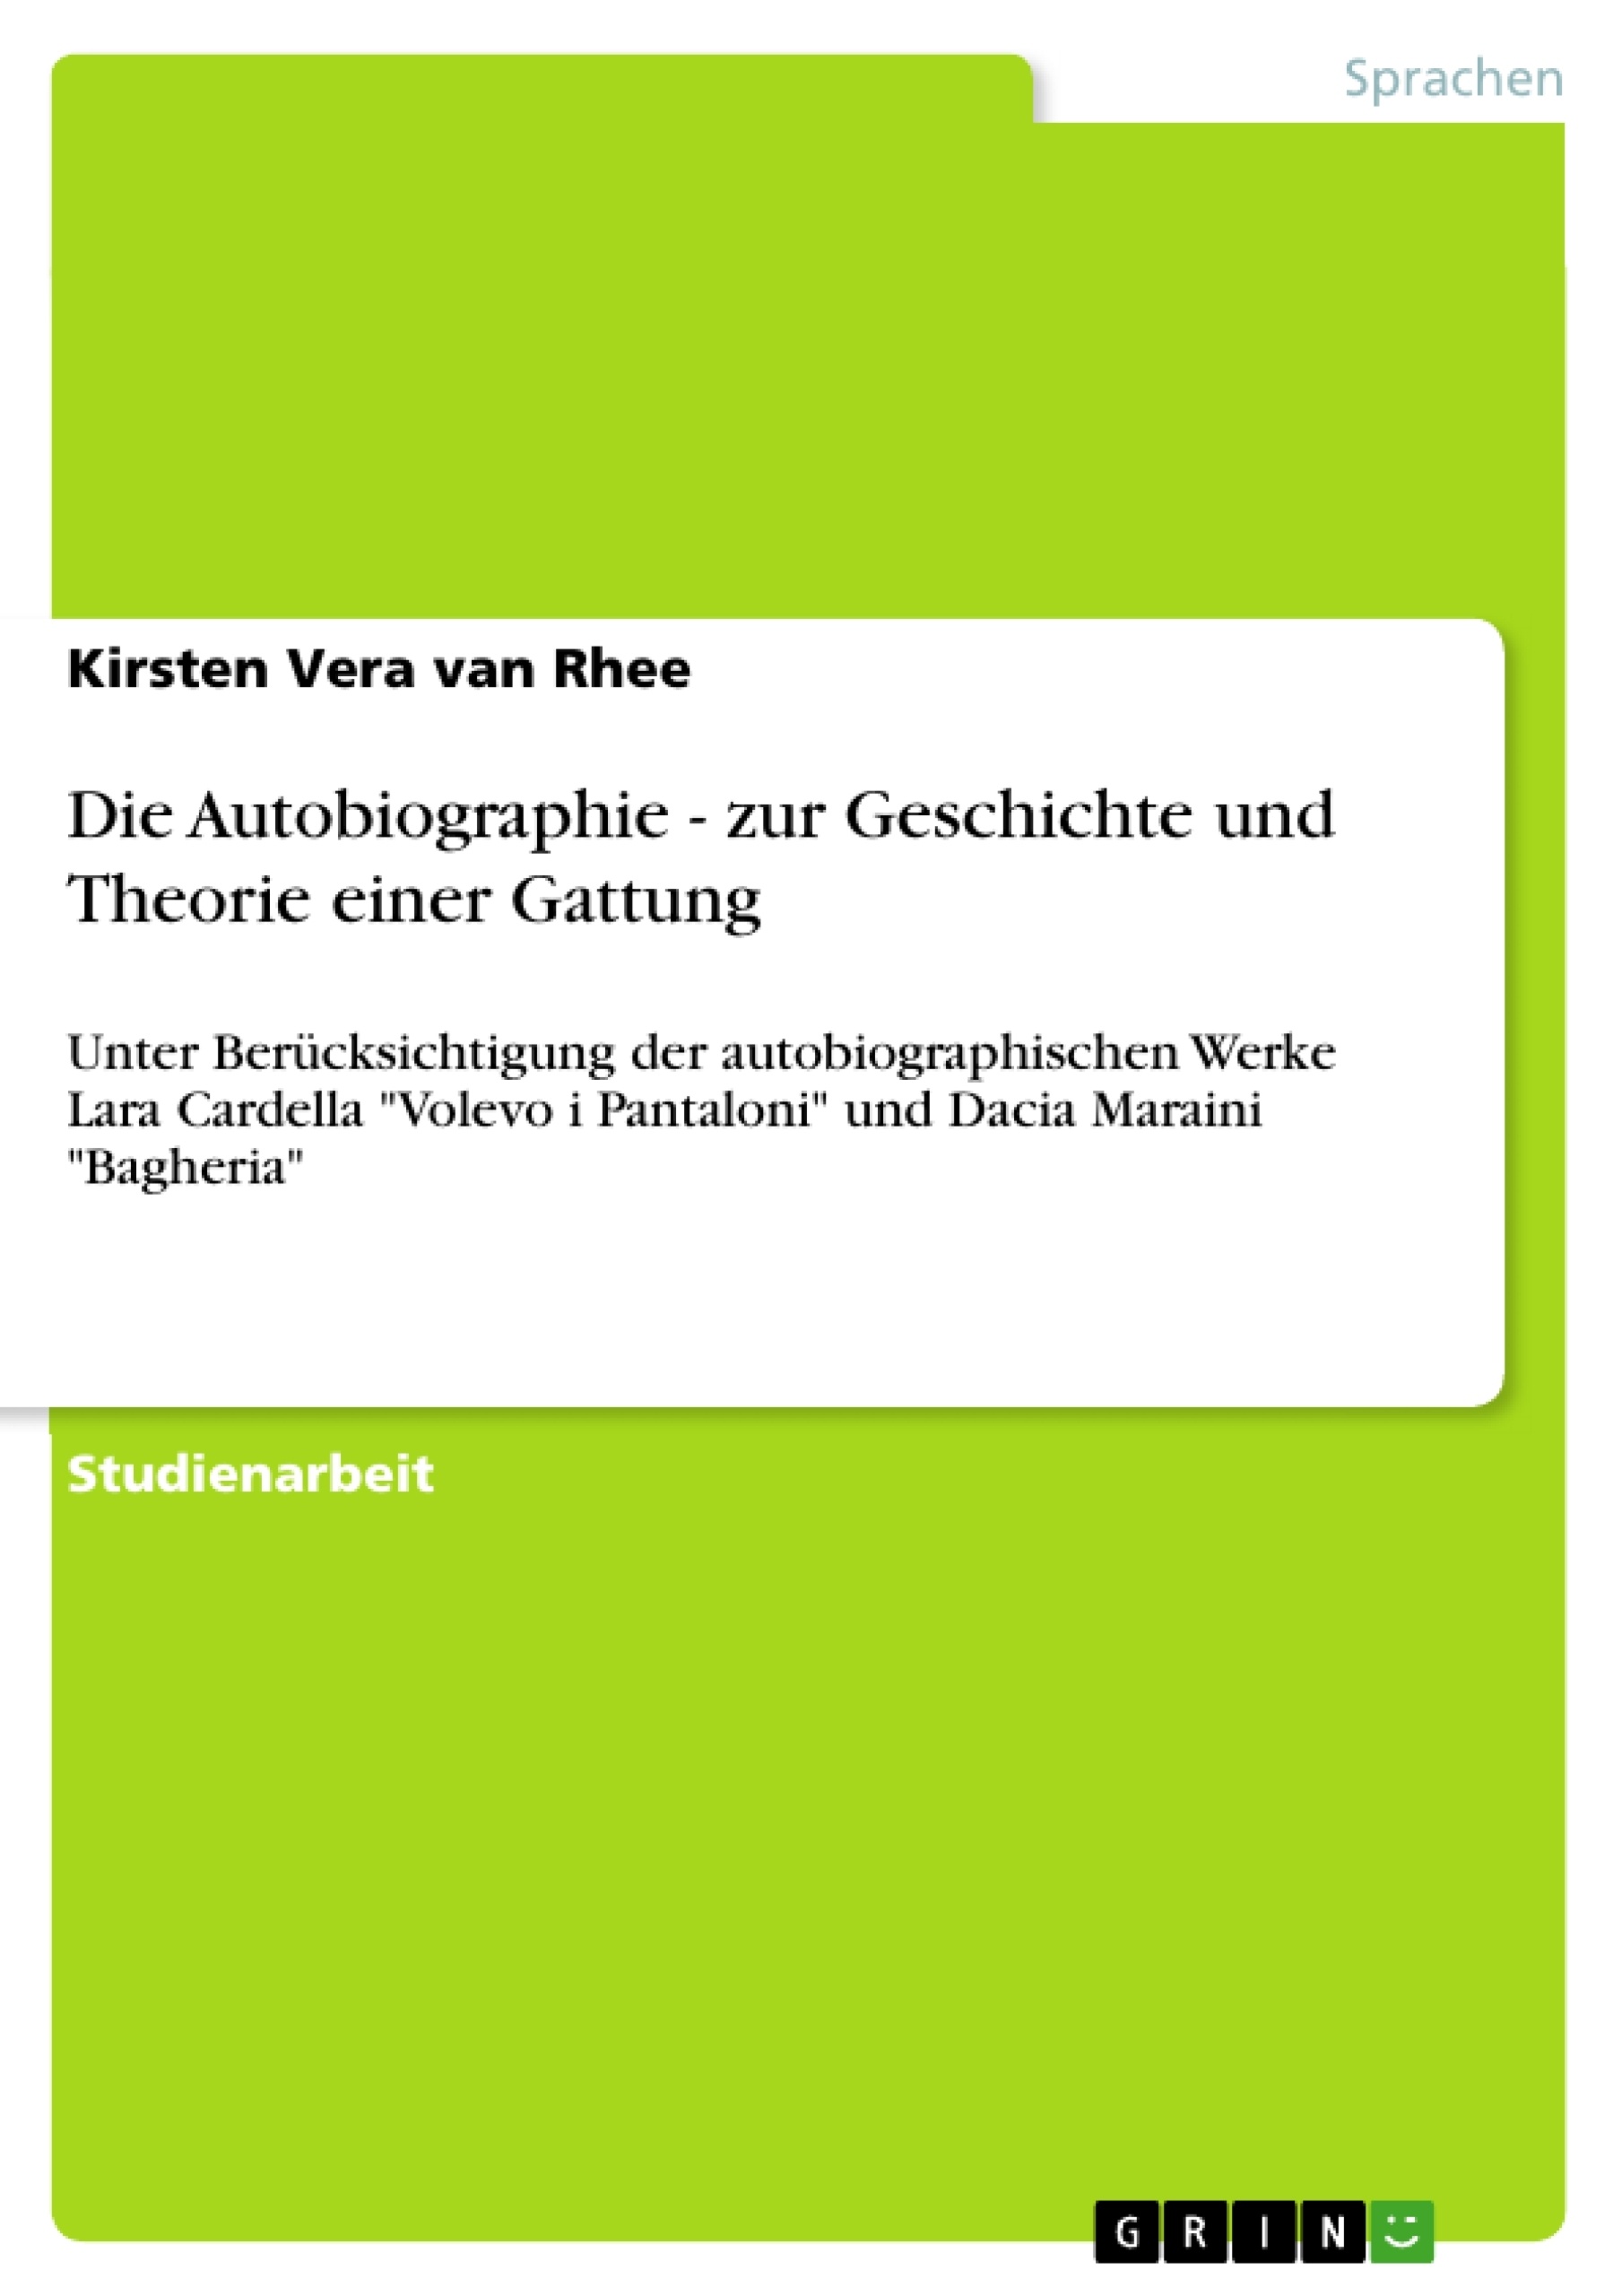 Title: Die Autobiographie - zur Geschichte und Theorie einer Gattung